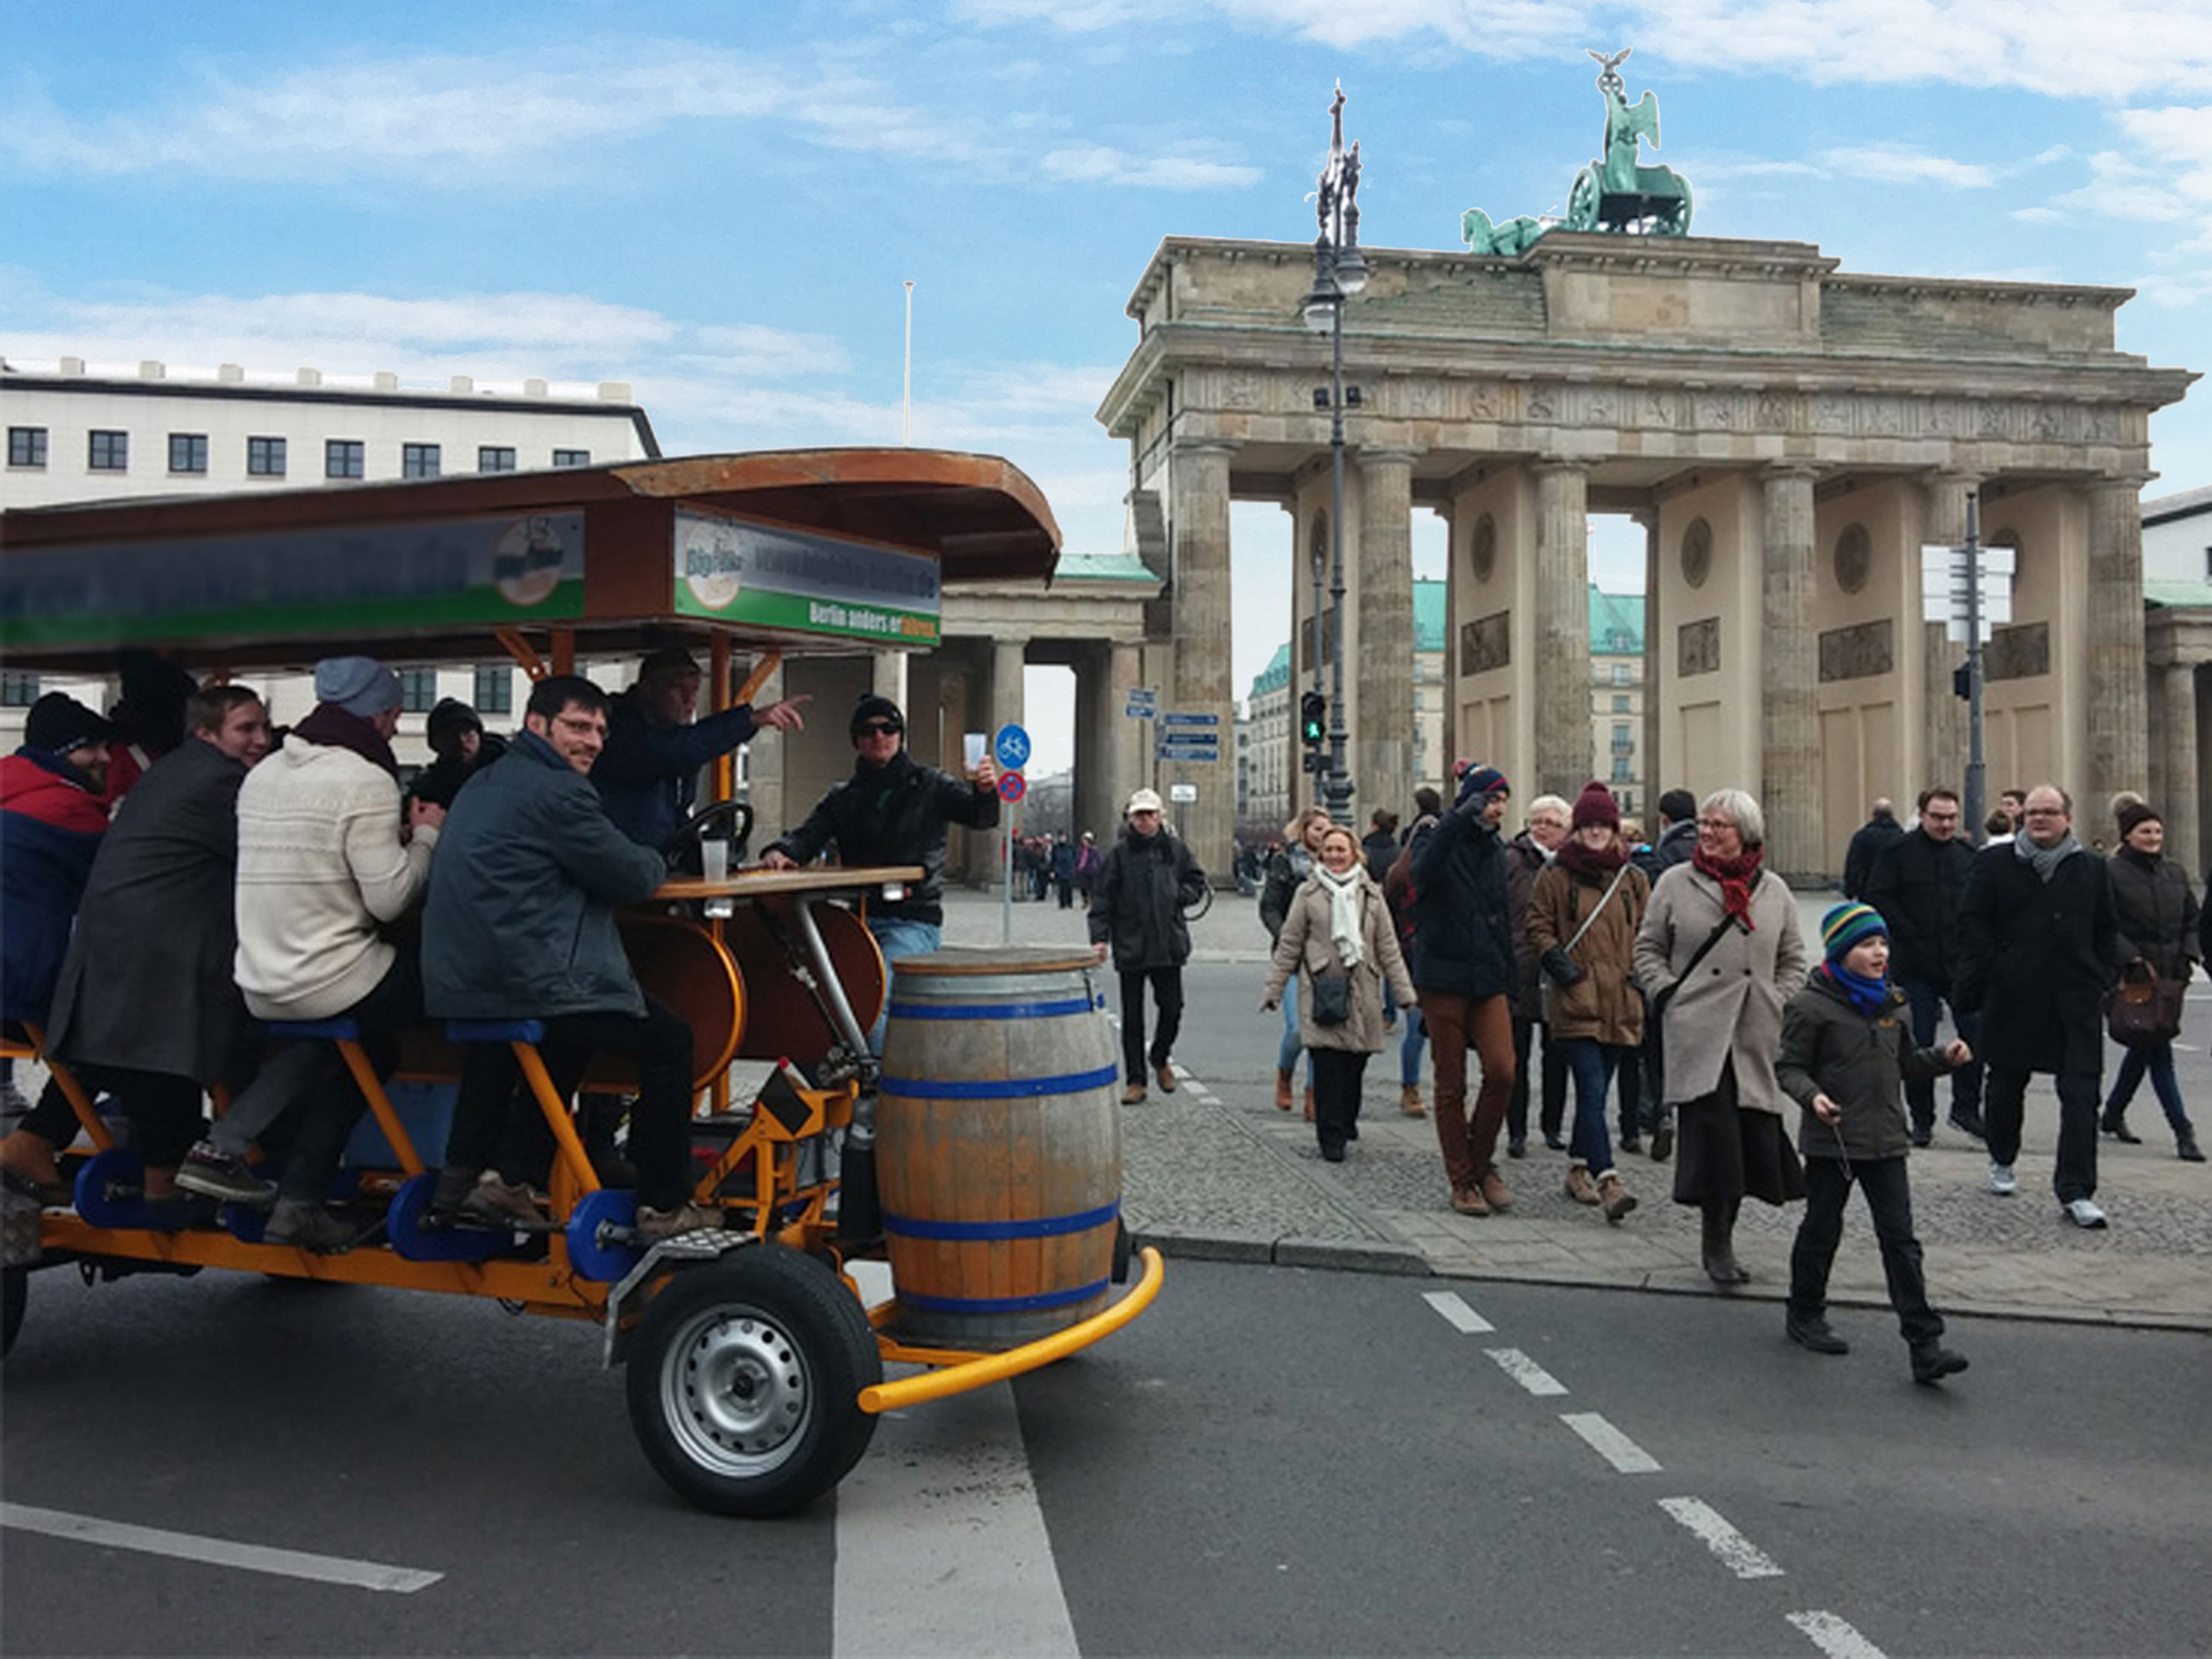 Top Reasons to Visit Berlin?